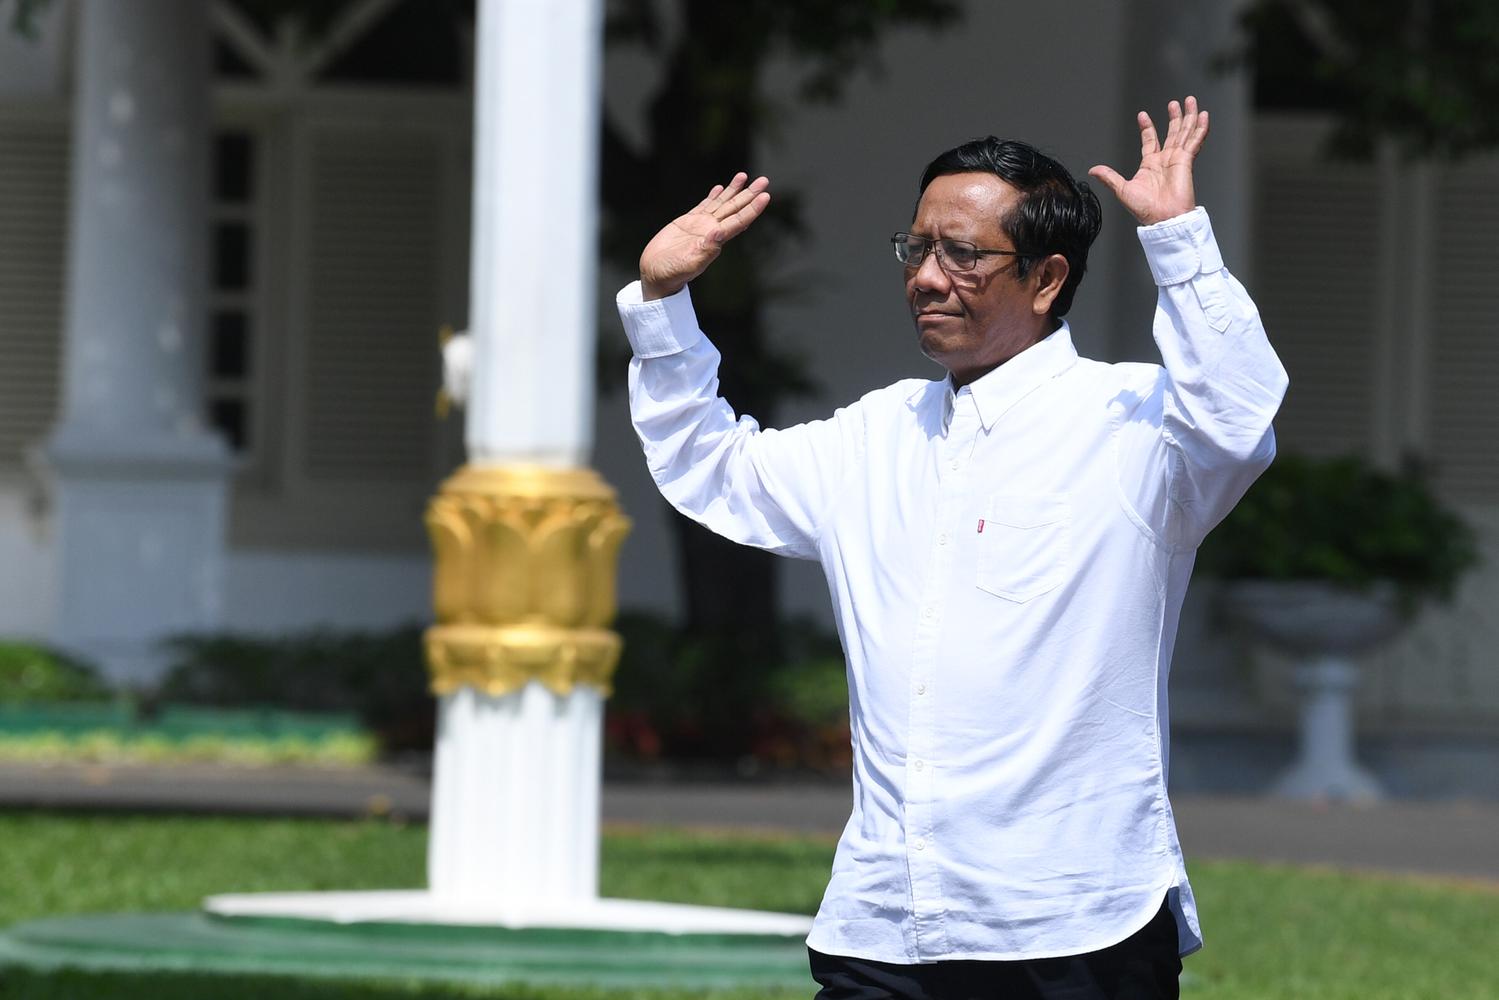 Anggota Dewan Pengarah Badan Pembinaan Ideologi Pancasila (BPIP) Mahfud MD melambaikan tangannya saat berjalan memasuki Kompleks Istana Kepresidenan, Jakarta, Senin (21/10/2019). Menurut rencana Presiden Joko Widodo akan memperkenalkan jajaran kabinet bar